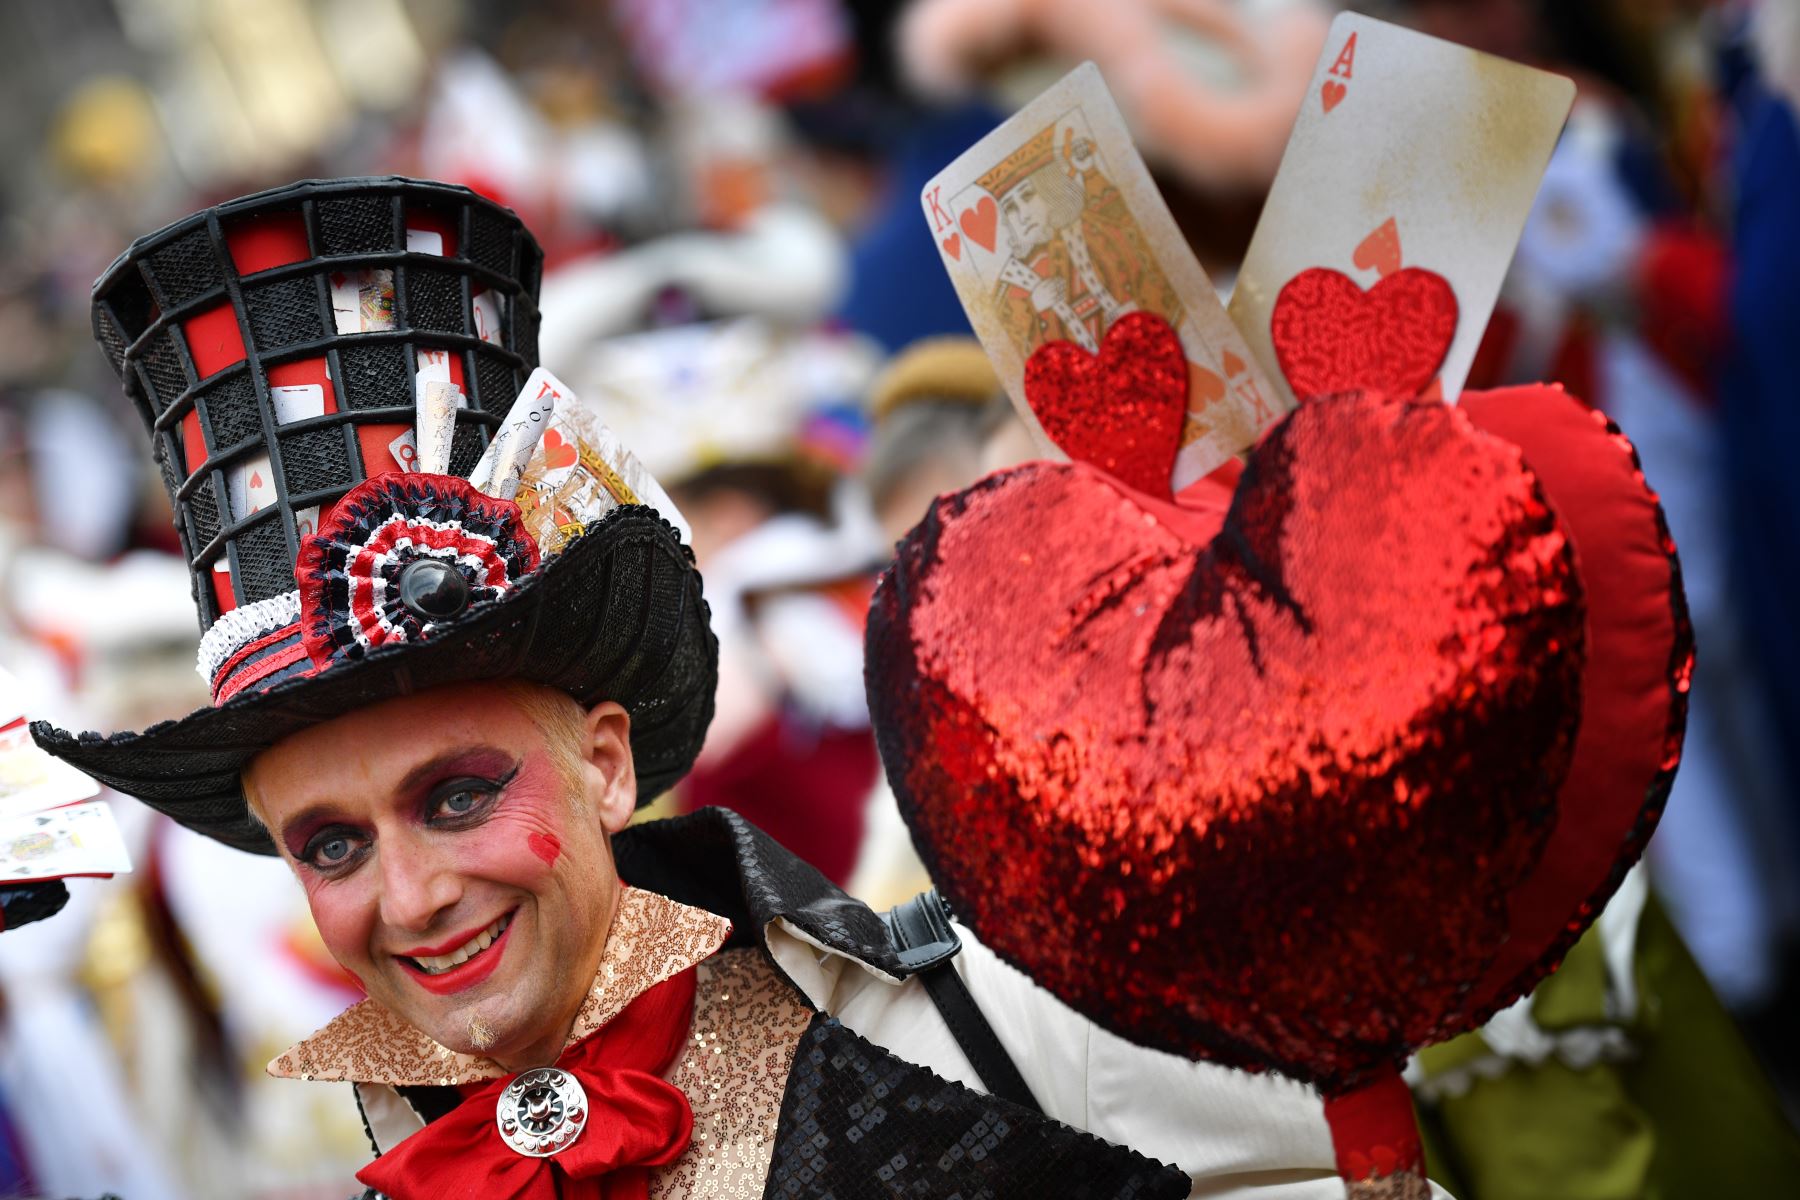 Un participante con un traje de época participa en el Carnaval de Venecia.
Foto: AFP